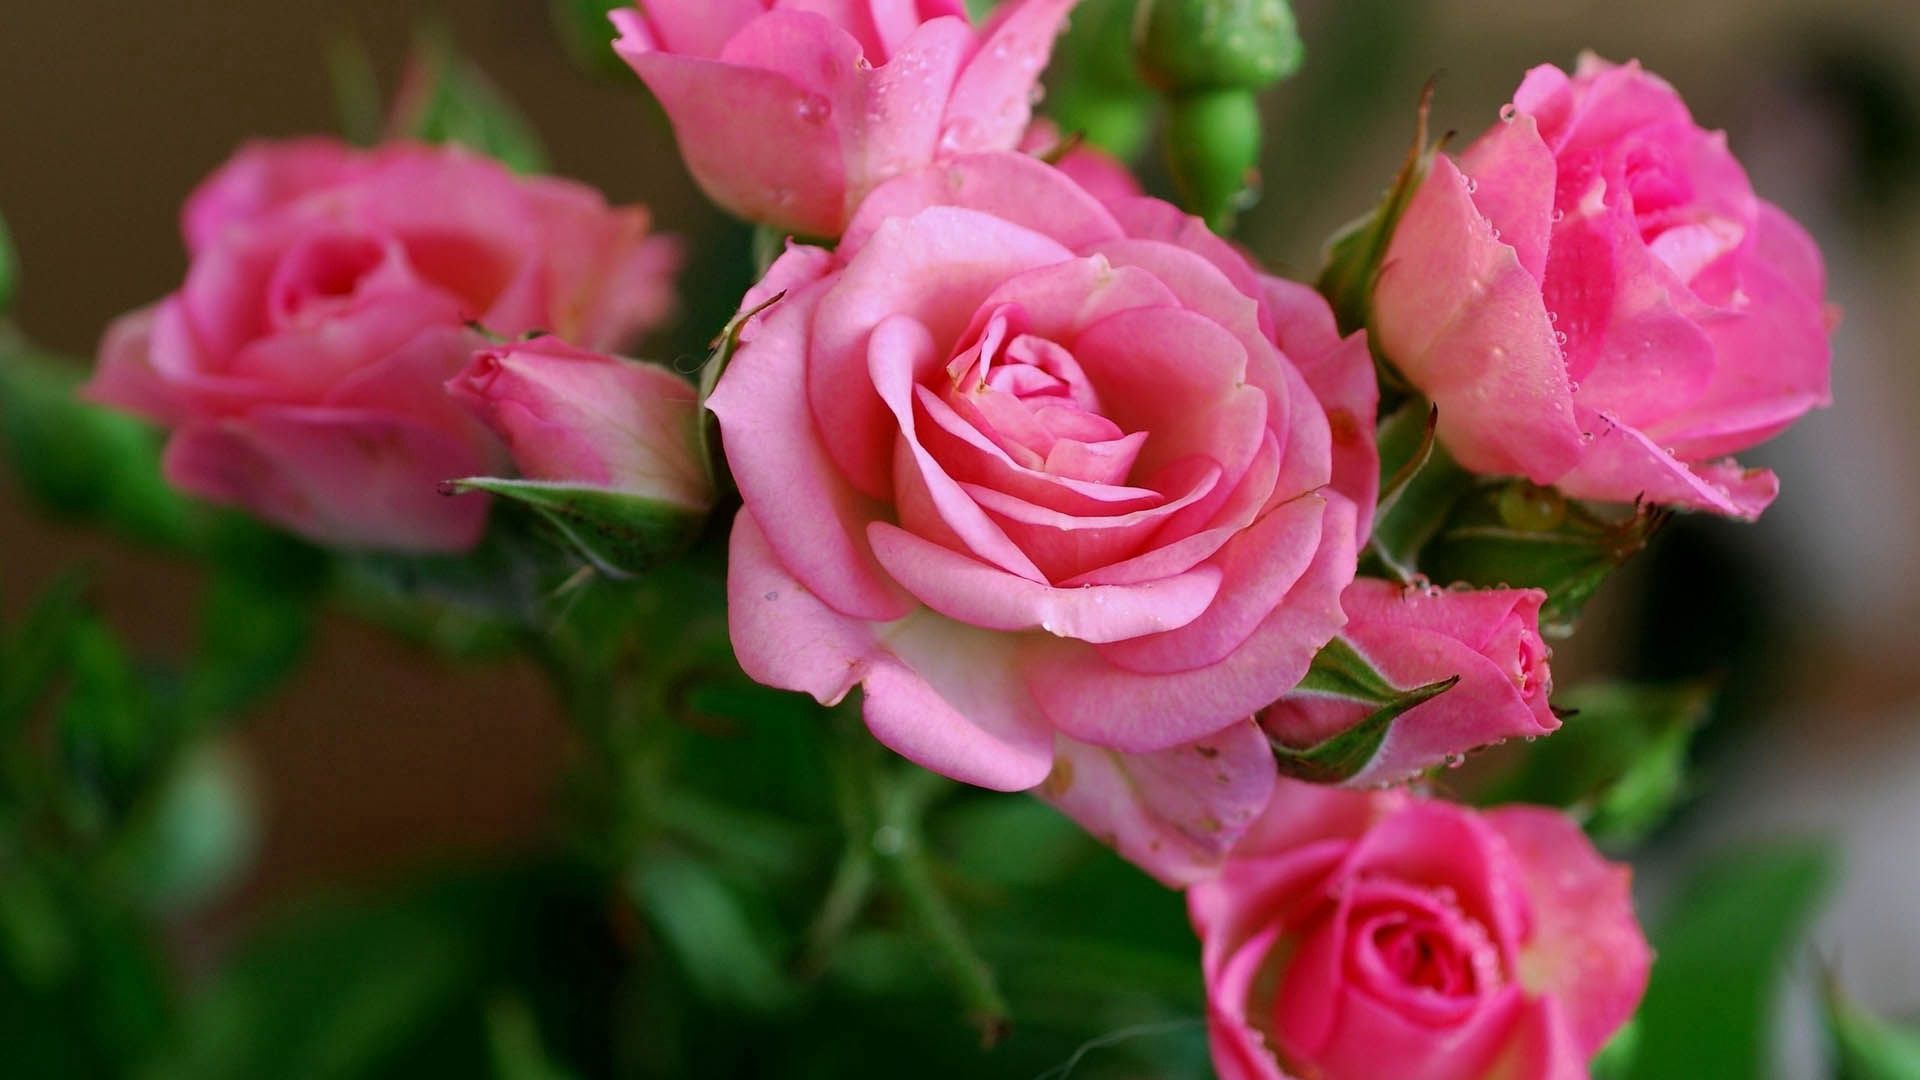 144885 Salvapantallas y fondos de pantalla Roses en tu teléfono. Descarga imágenes de rosado, flores, rosa, ramo gratis